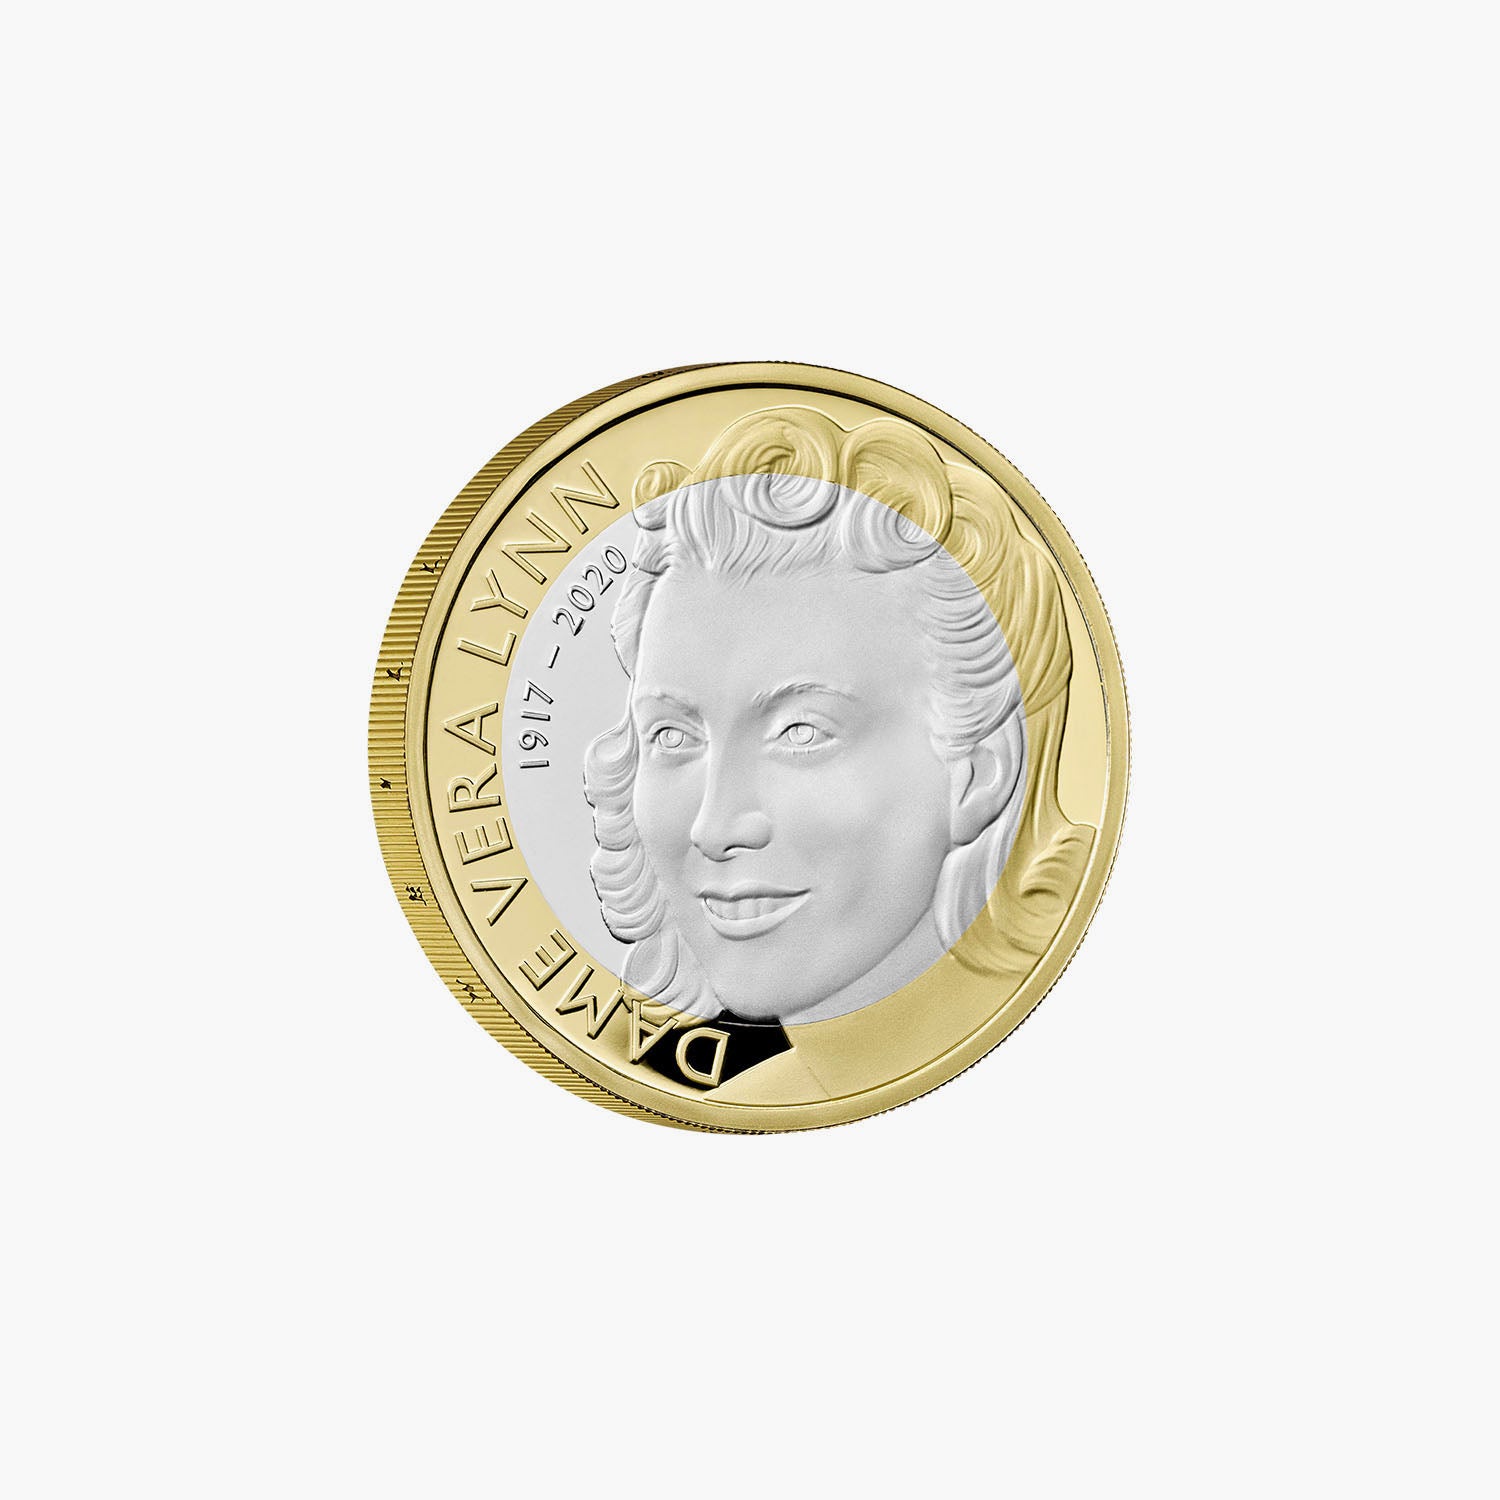 デイム ベラ リンの生涯と遺産を祝う 2022 英国 £2 シルバー プルーフ コイン